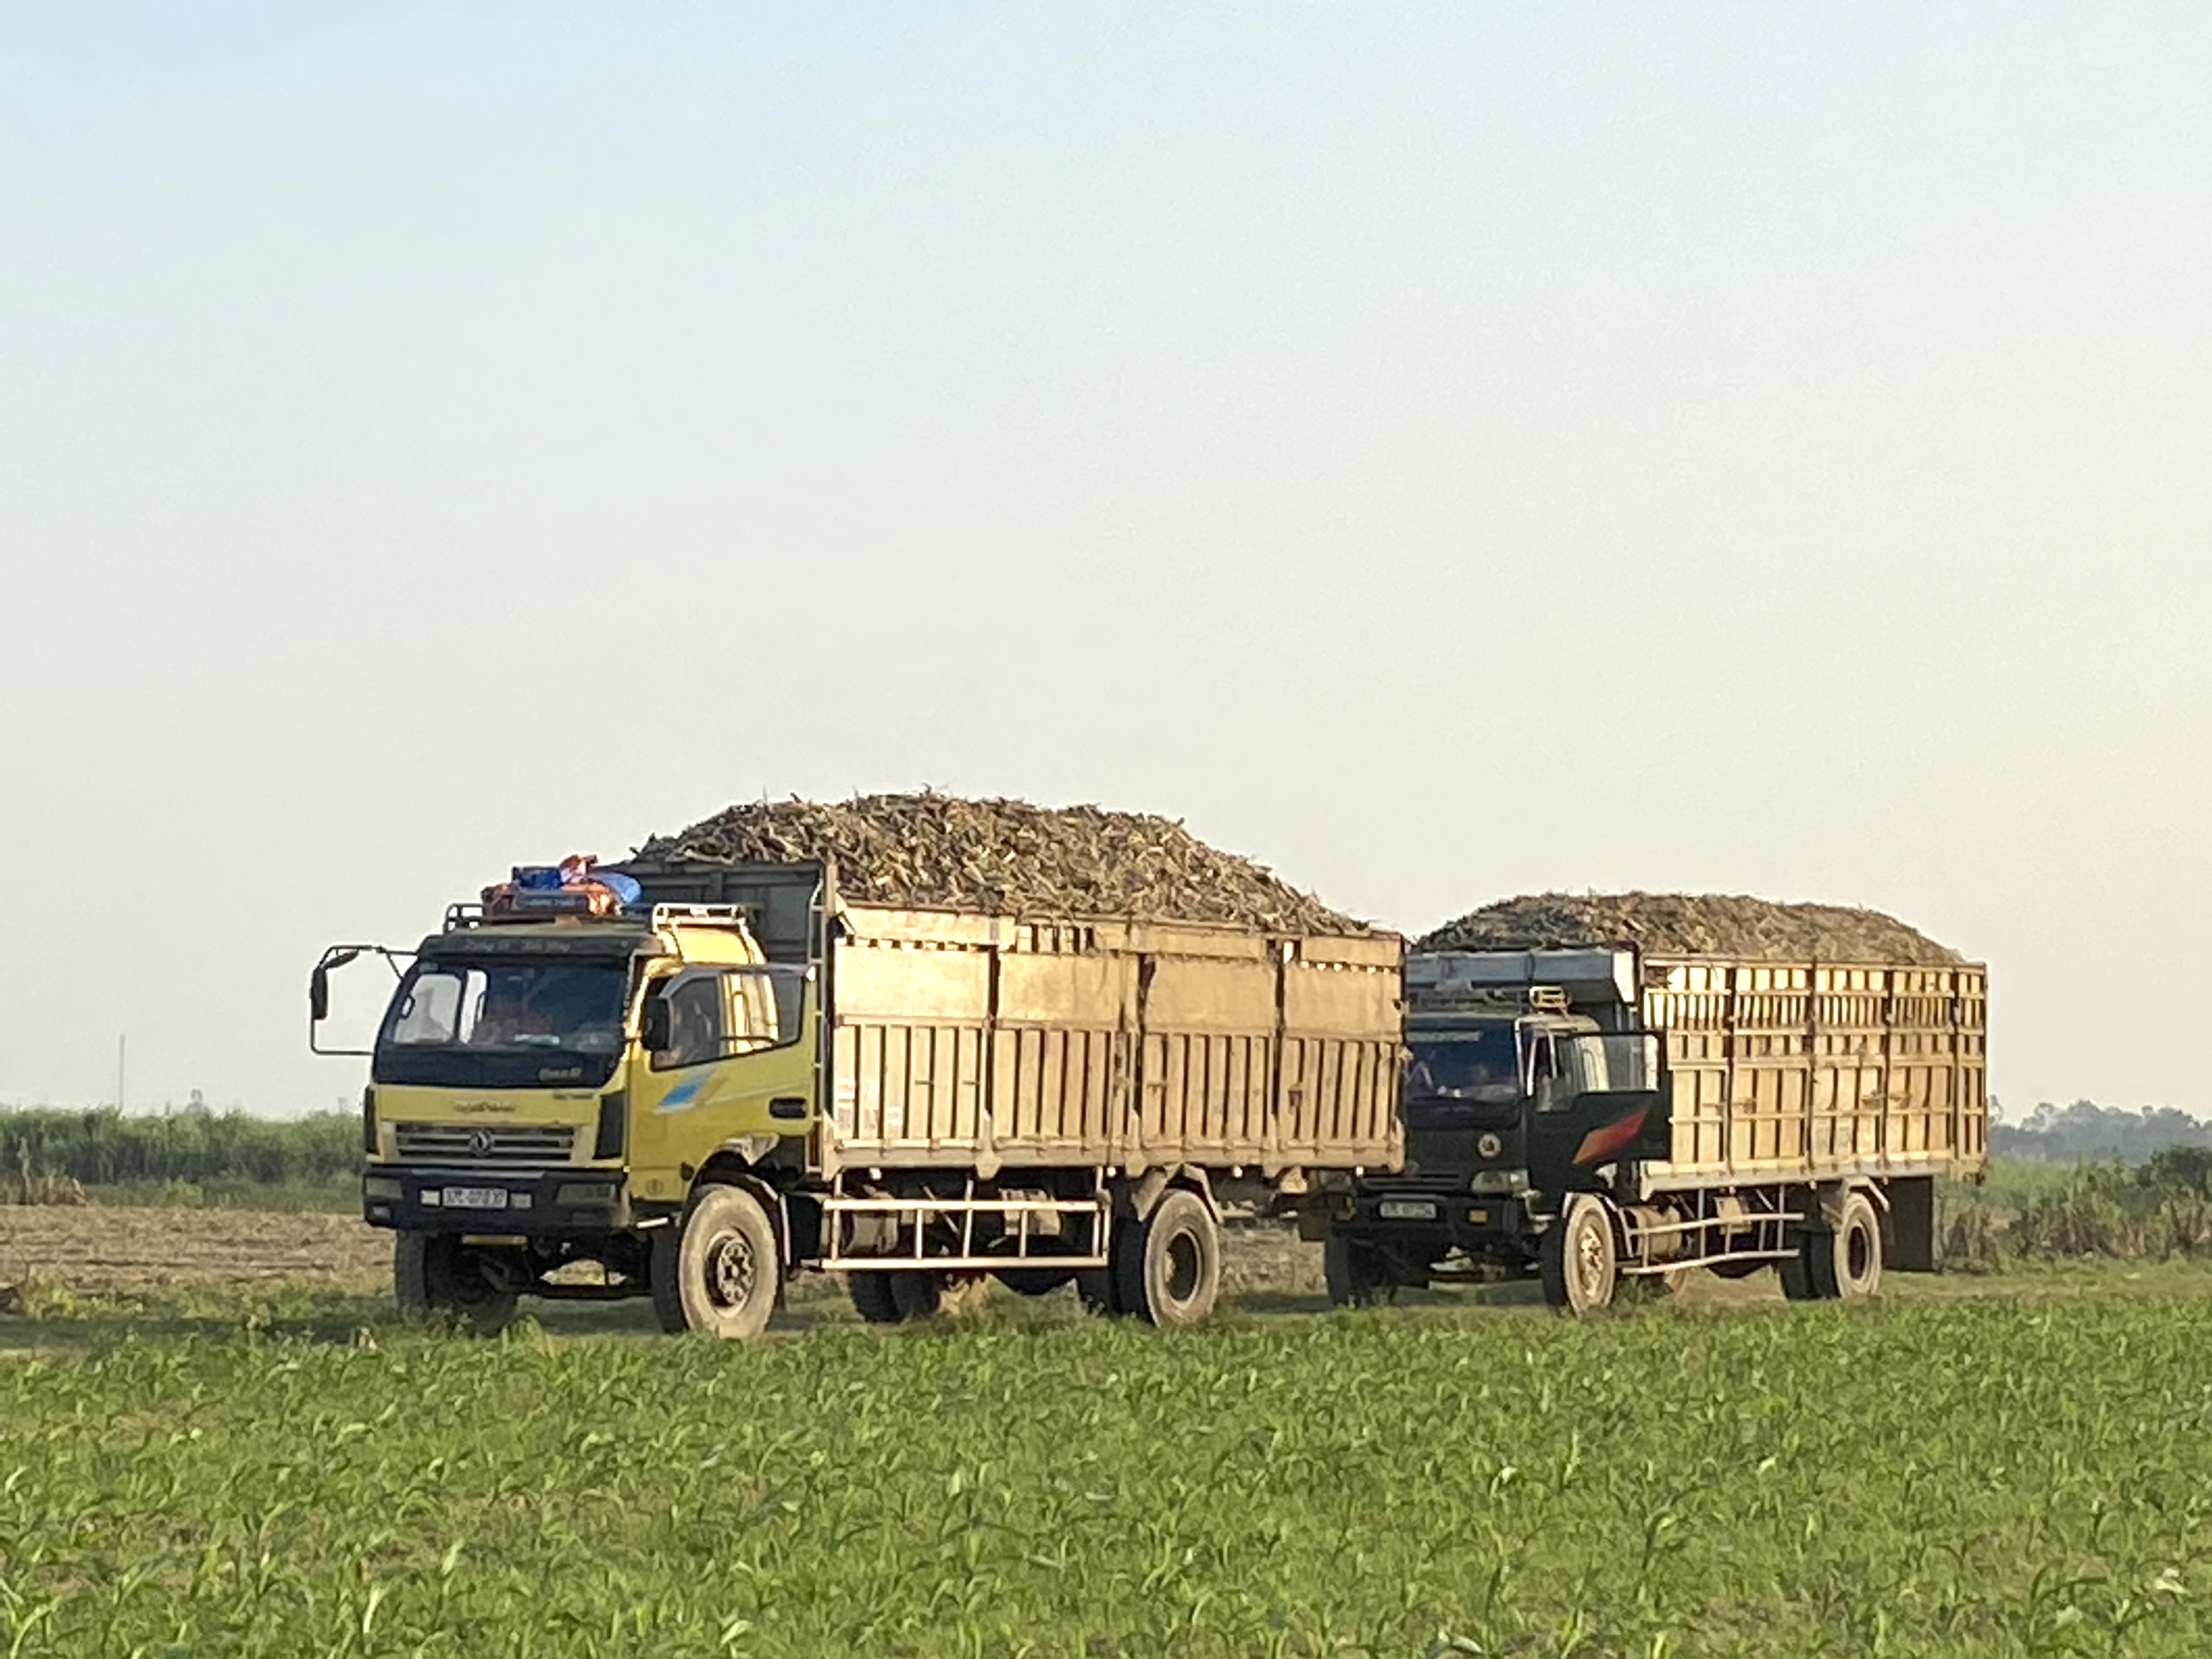 Mía thâm canh ở huyện Nam Đàn cho năng suất gần 100 tấn/ha. Ảnh: Trân Châu